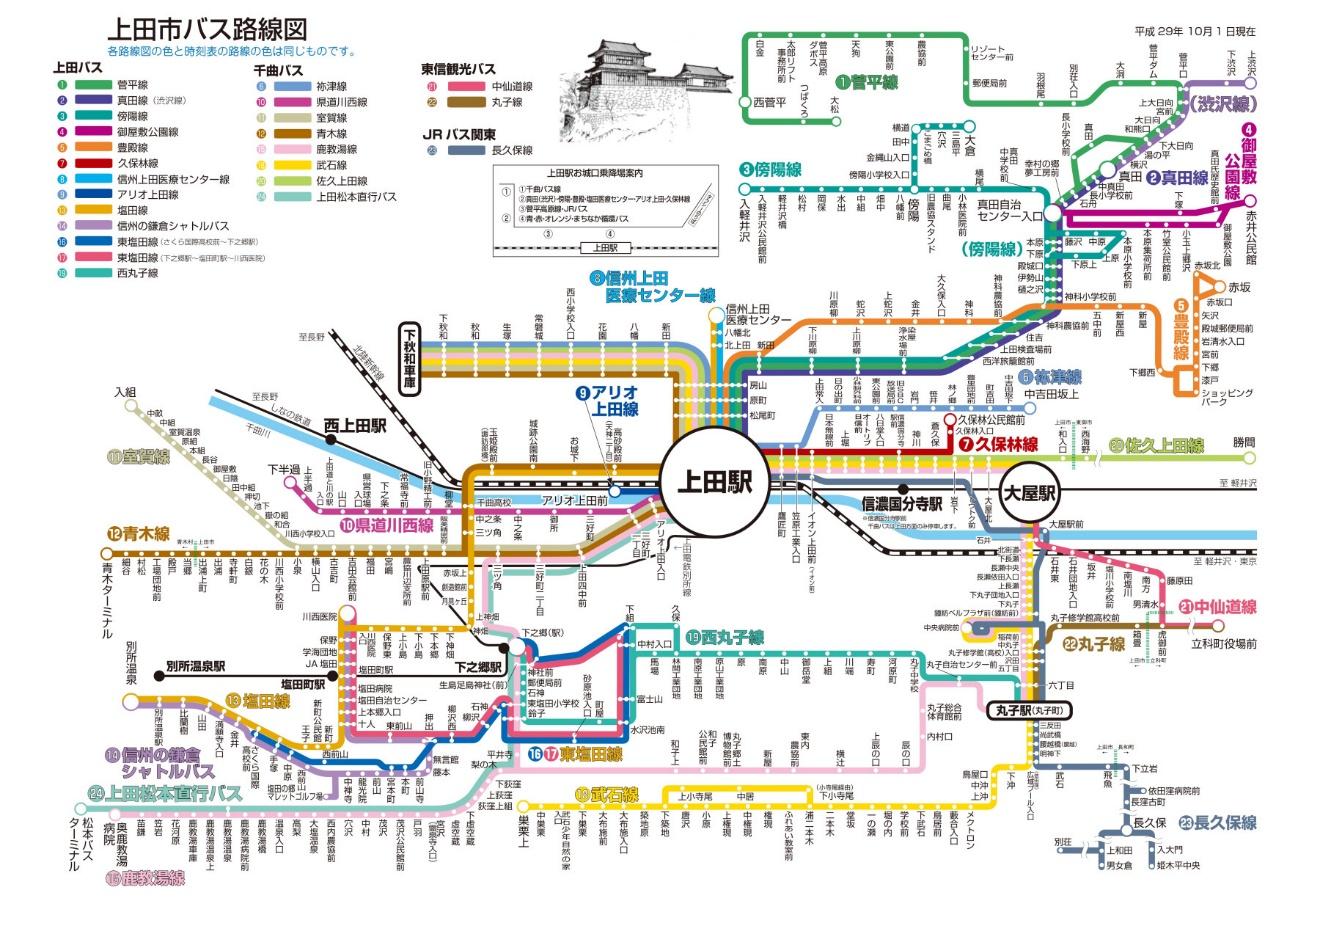 上田駅を中心とするバス路線図です